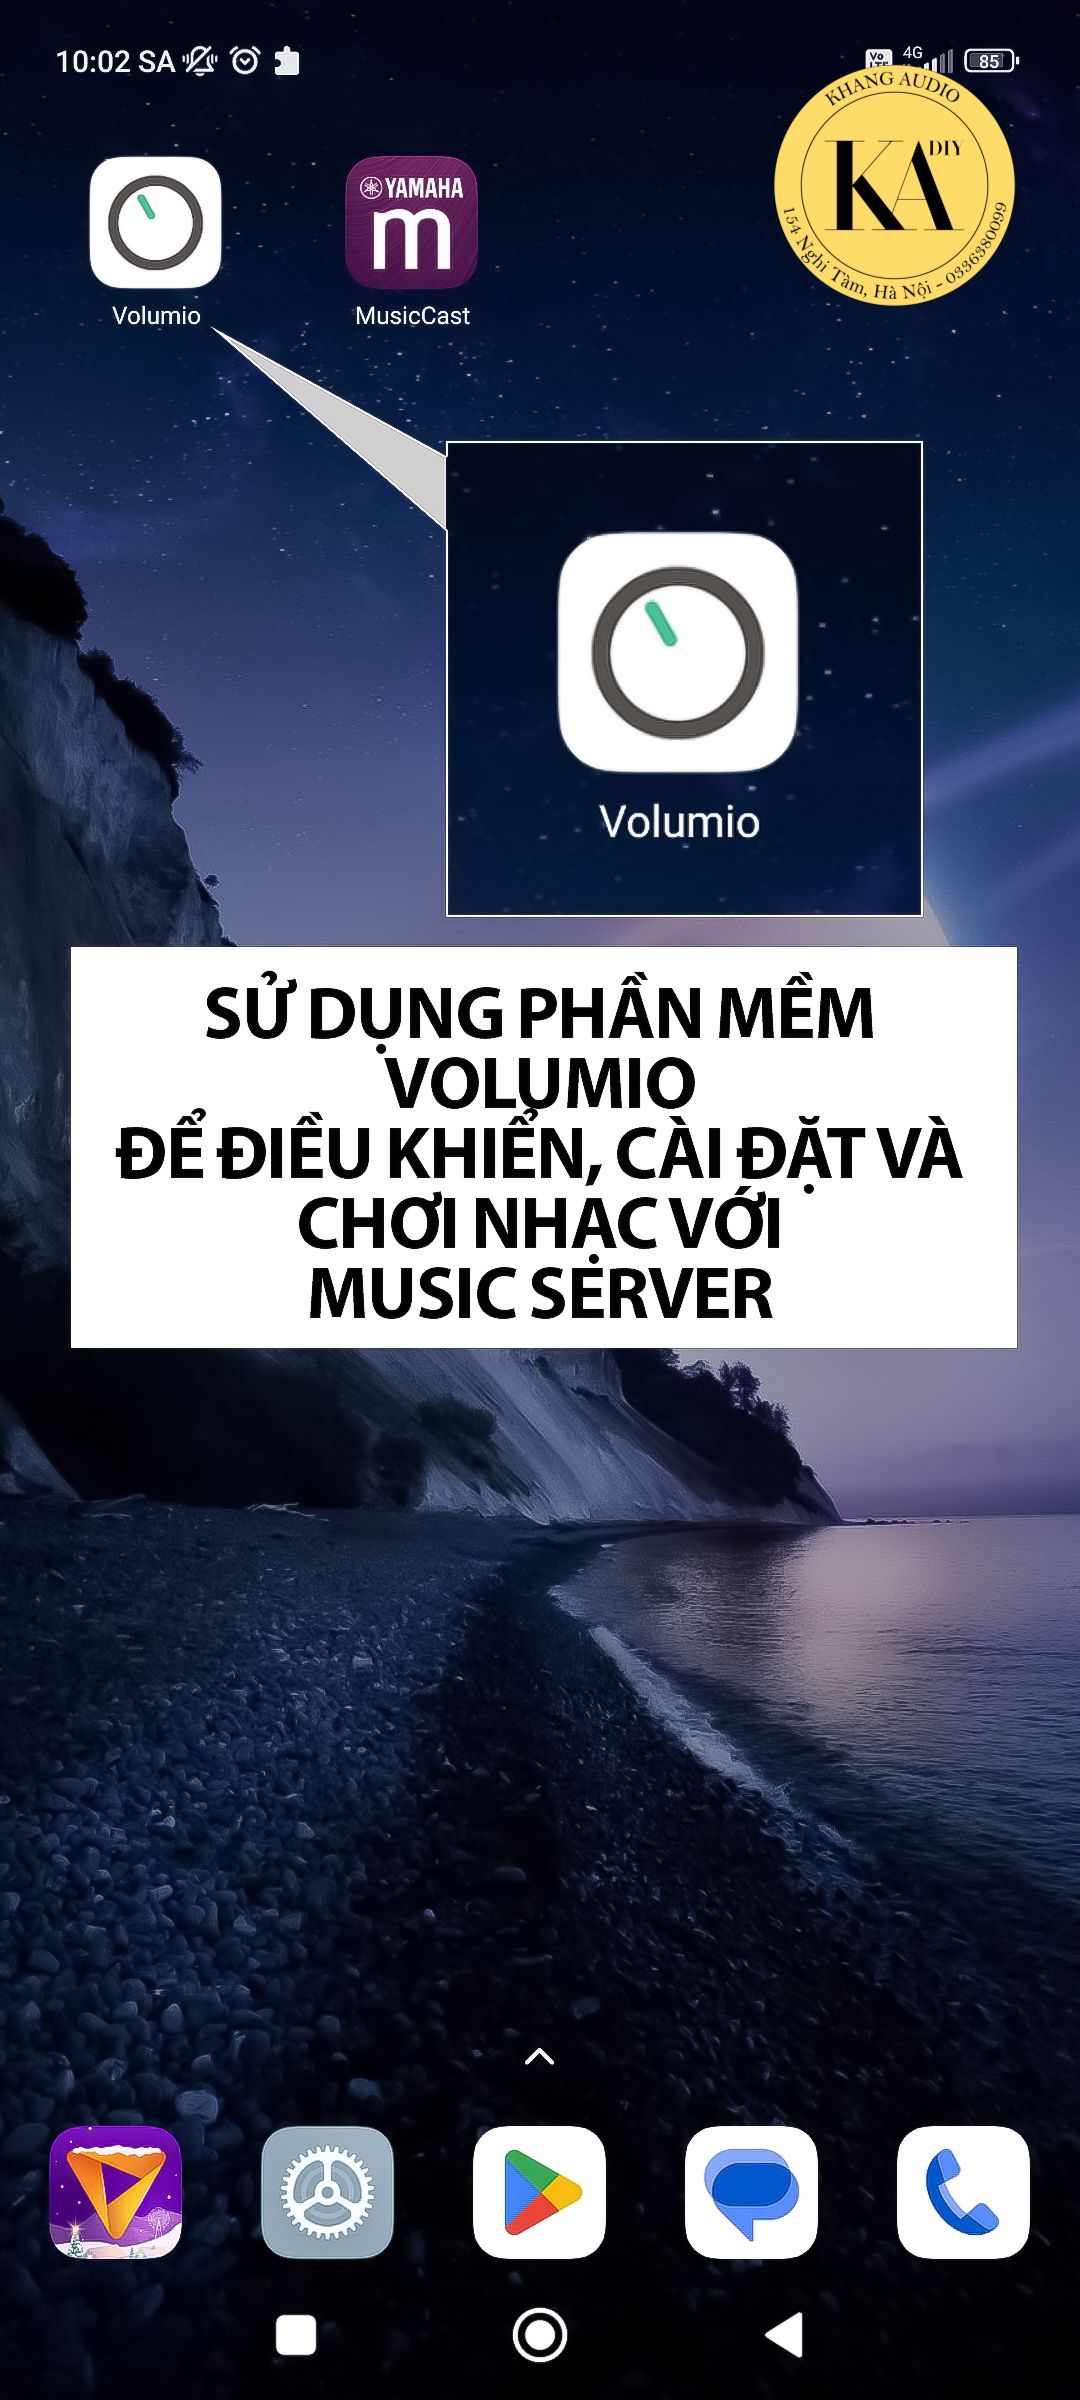 Phần mềm Volumio để điều khiển, cài đặt cũng như là chơi nhạc với Music Server